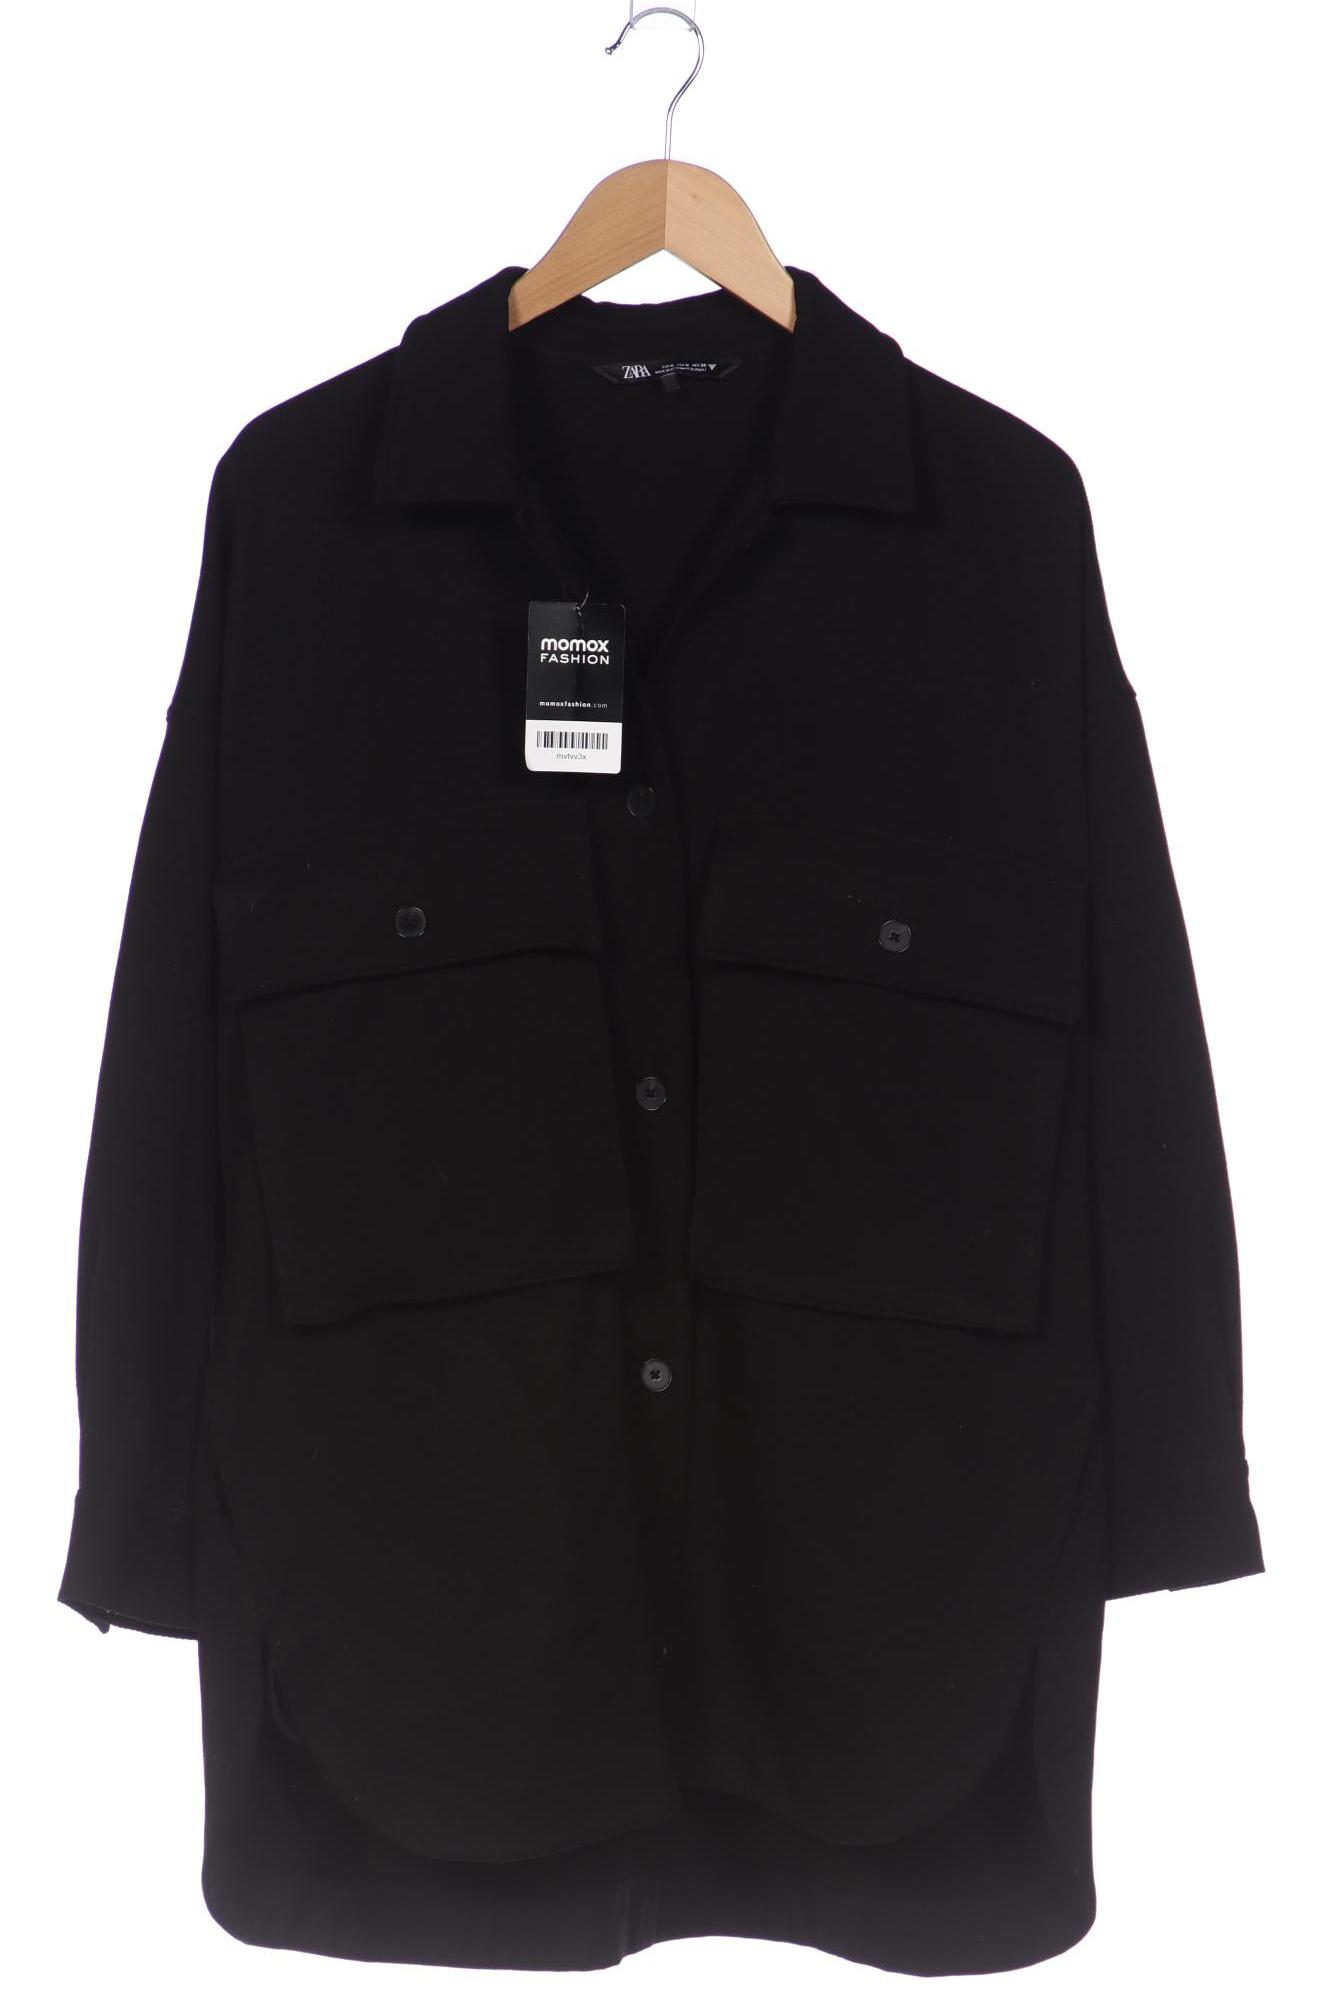 Zara Damen Jacke, schwarz, Gr. 38 von ZARA